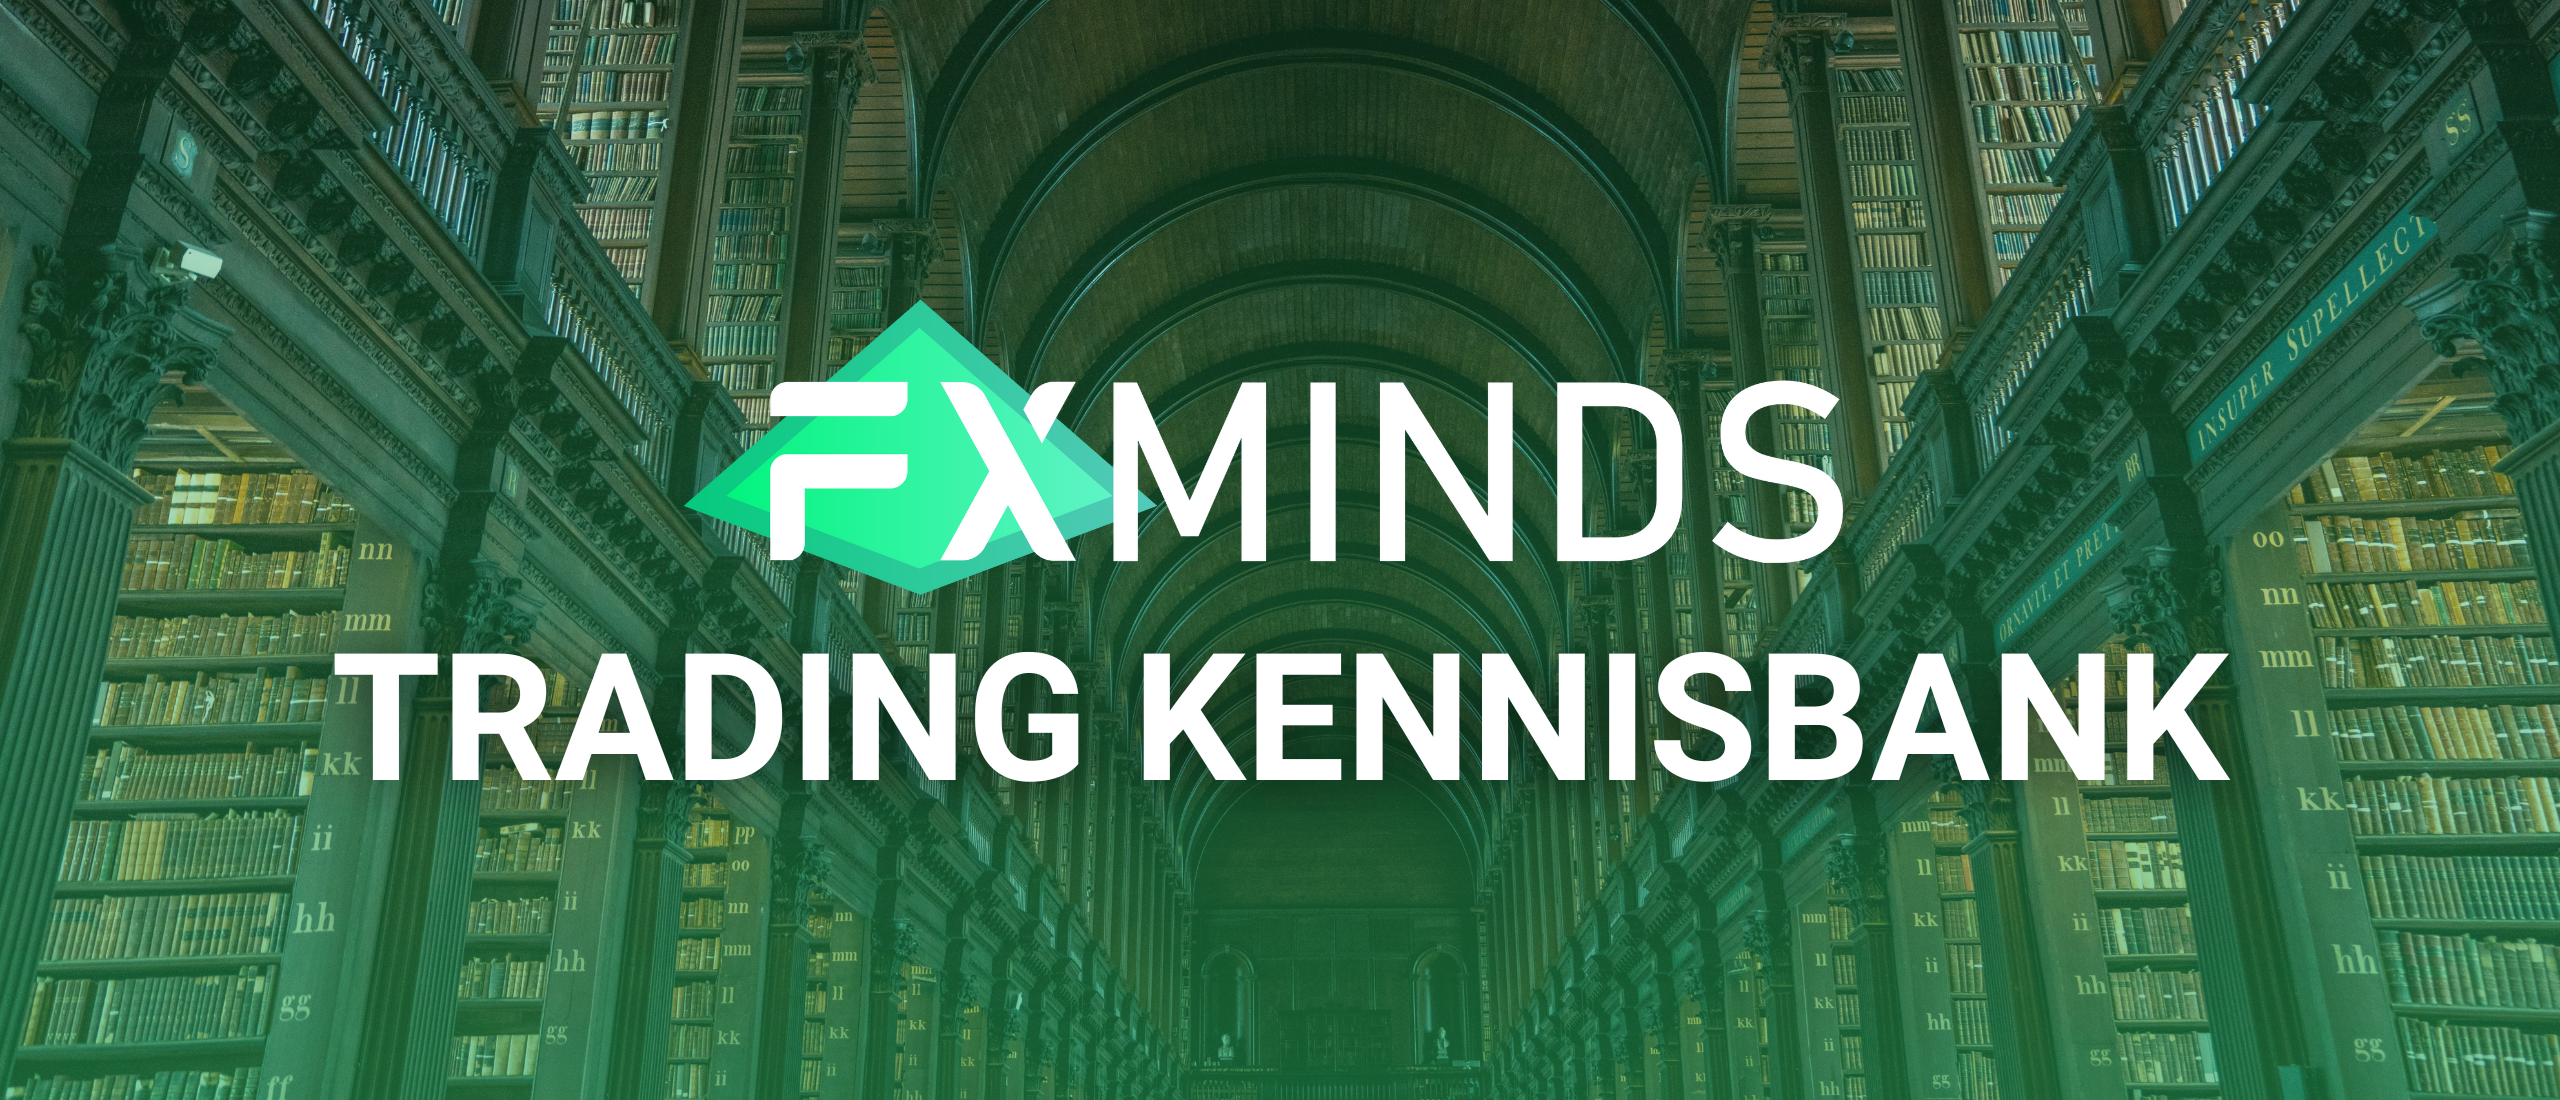 FXminds Trading Kennisbank